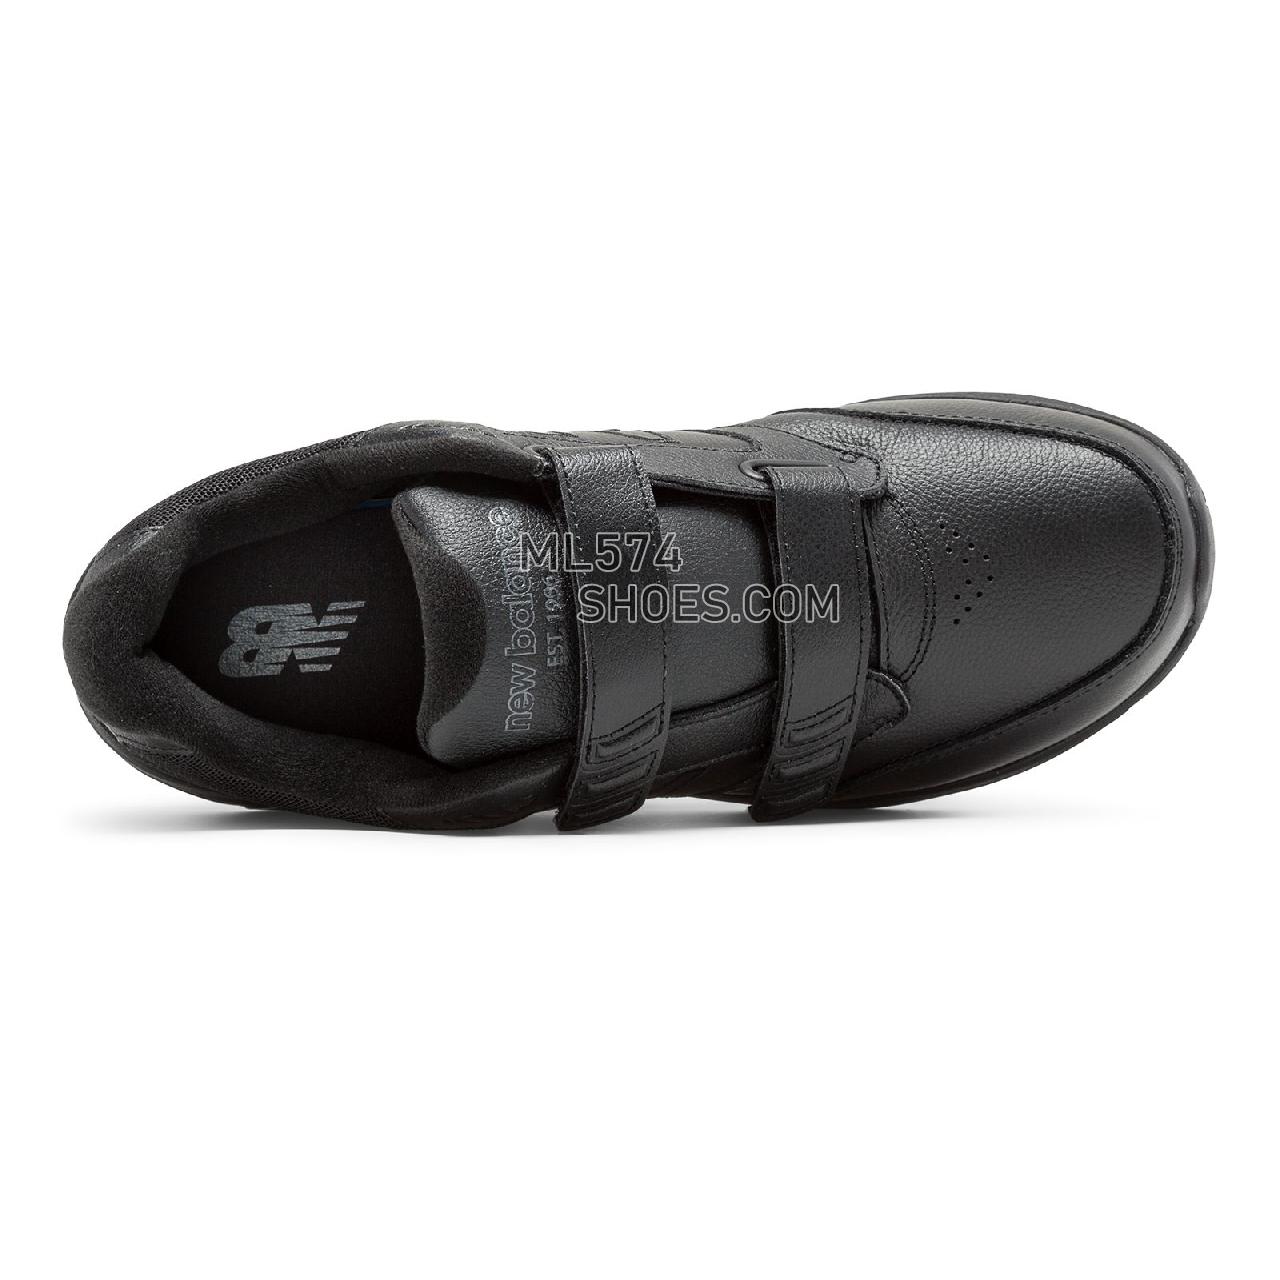 New Balance Men's Hook and Loop Leather 928v3 - Men's 928 - Walking Black - MW928HB3